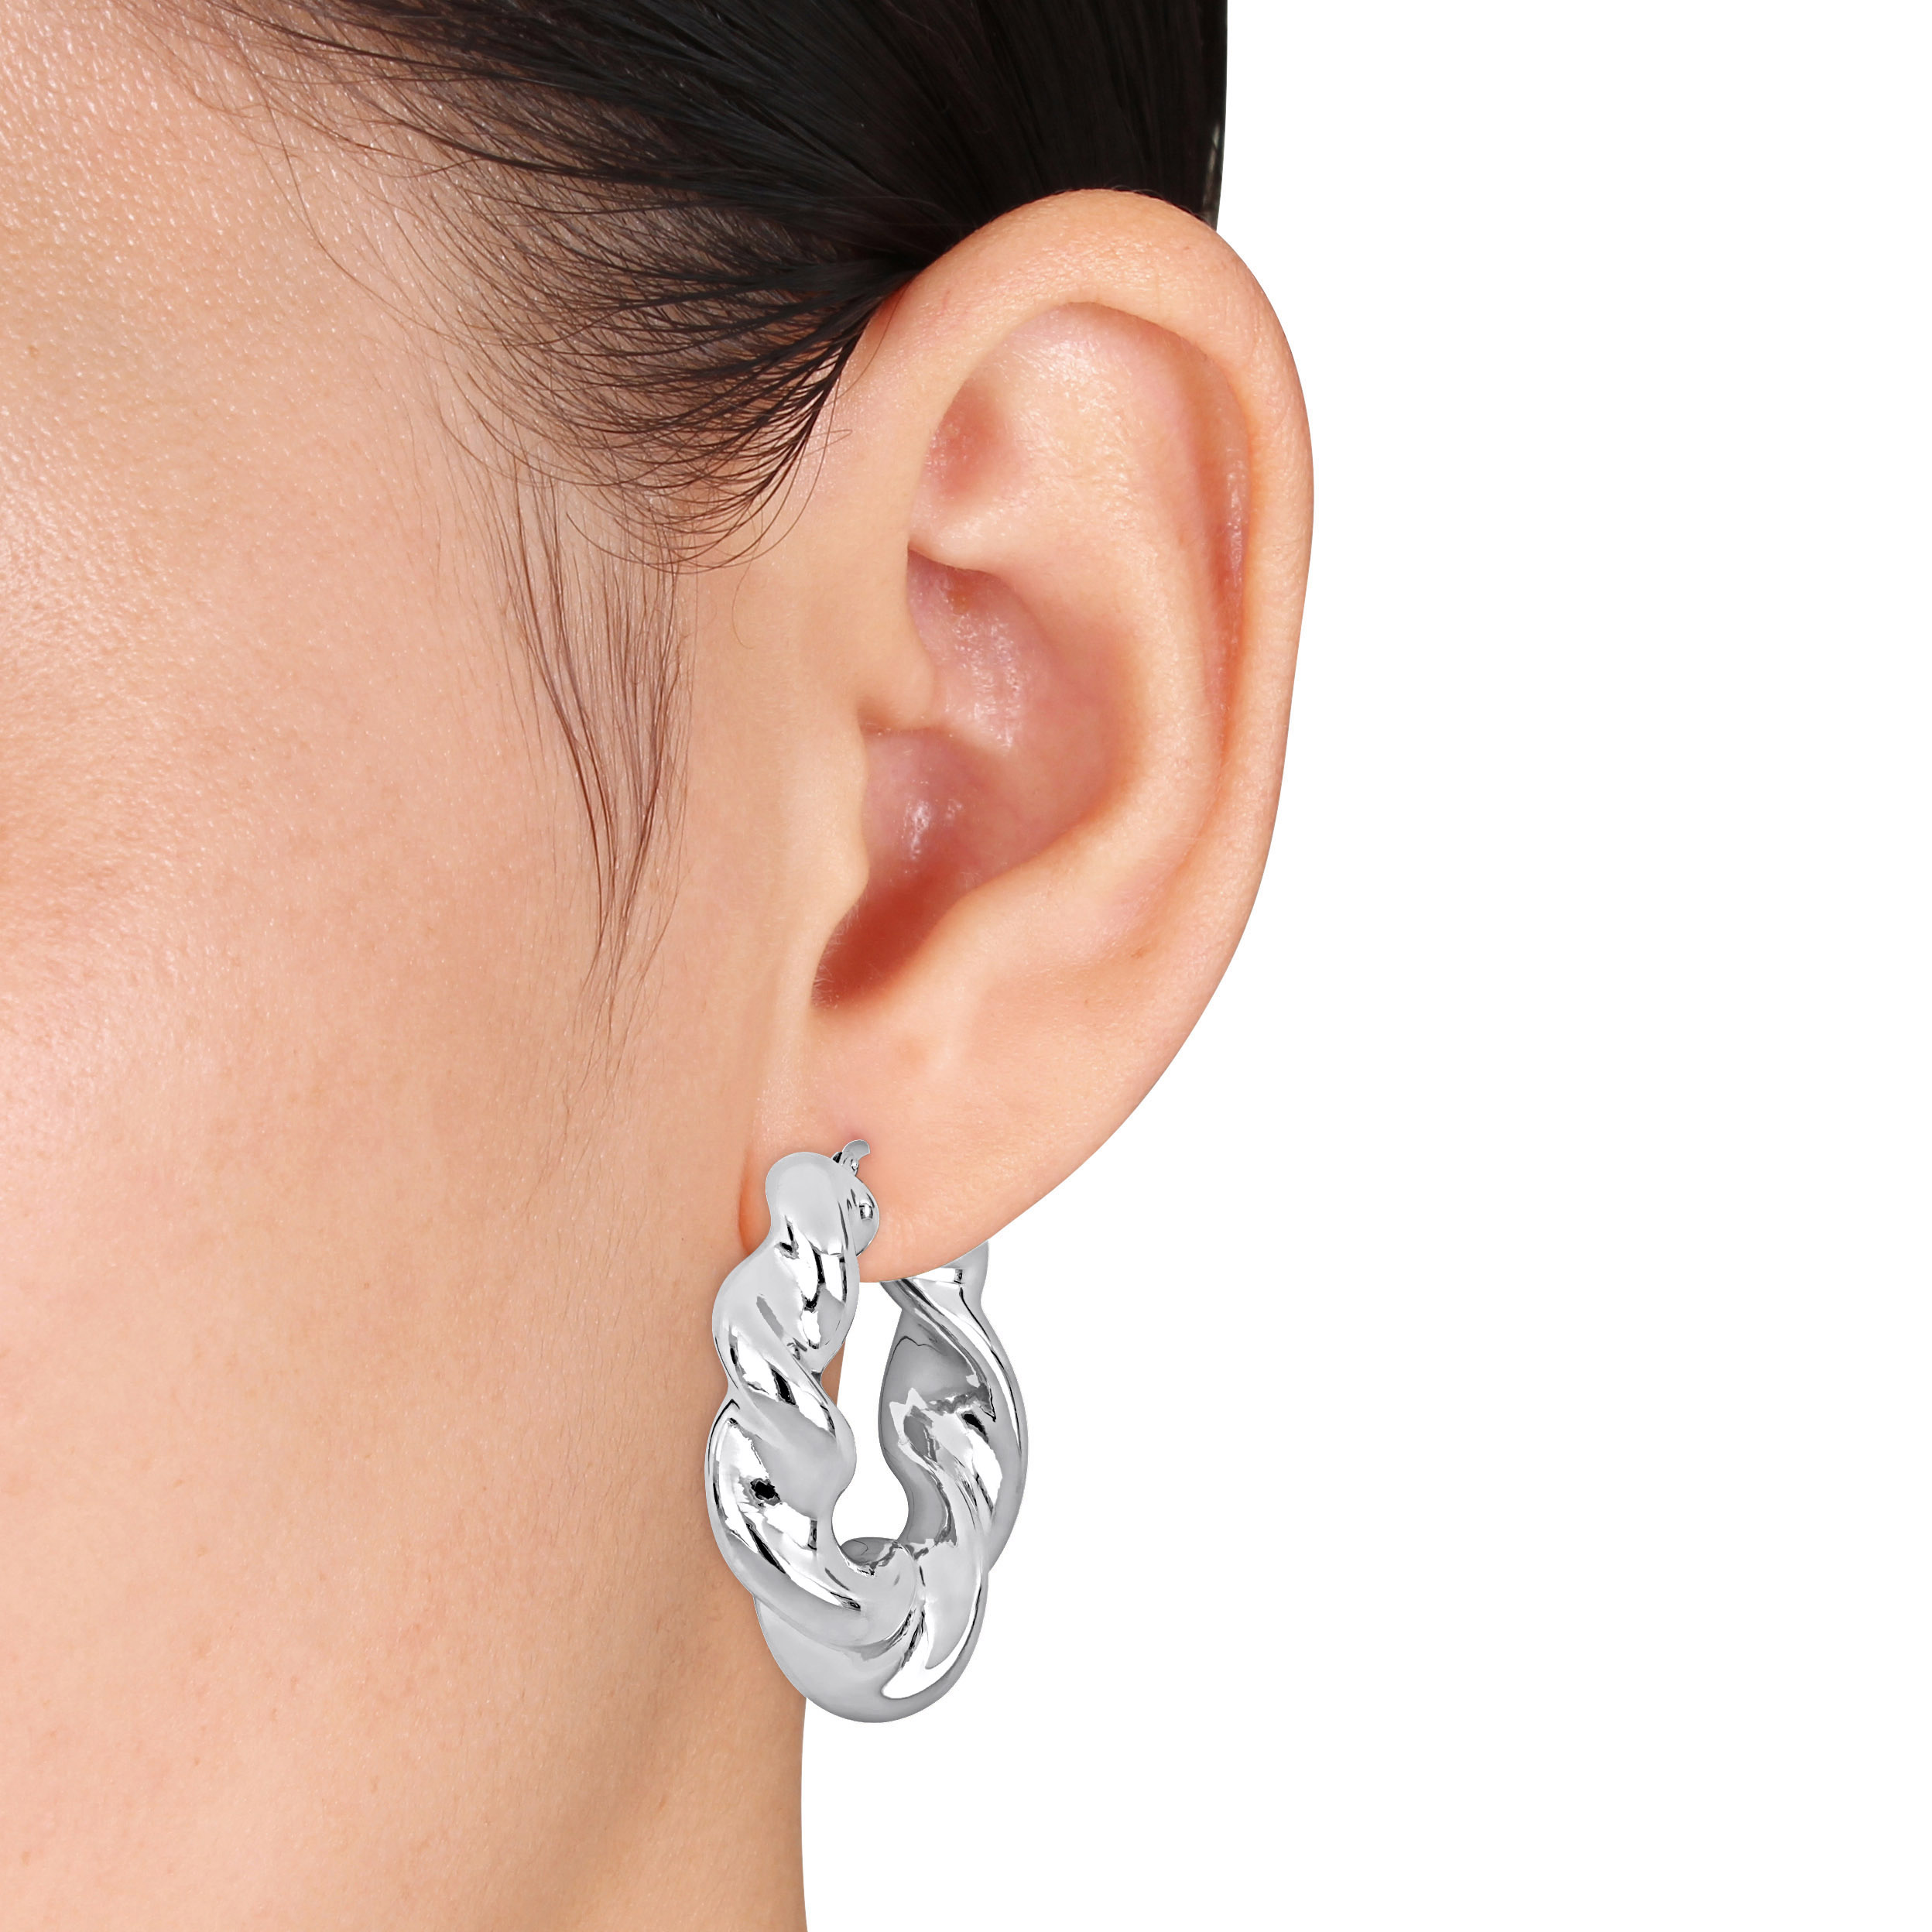 39.5 MM Twisted Hoop Earrings in Sterling Silver